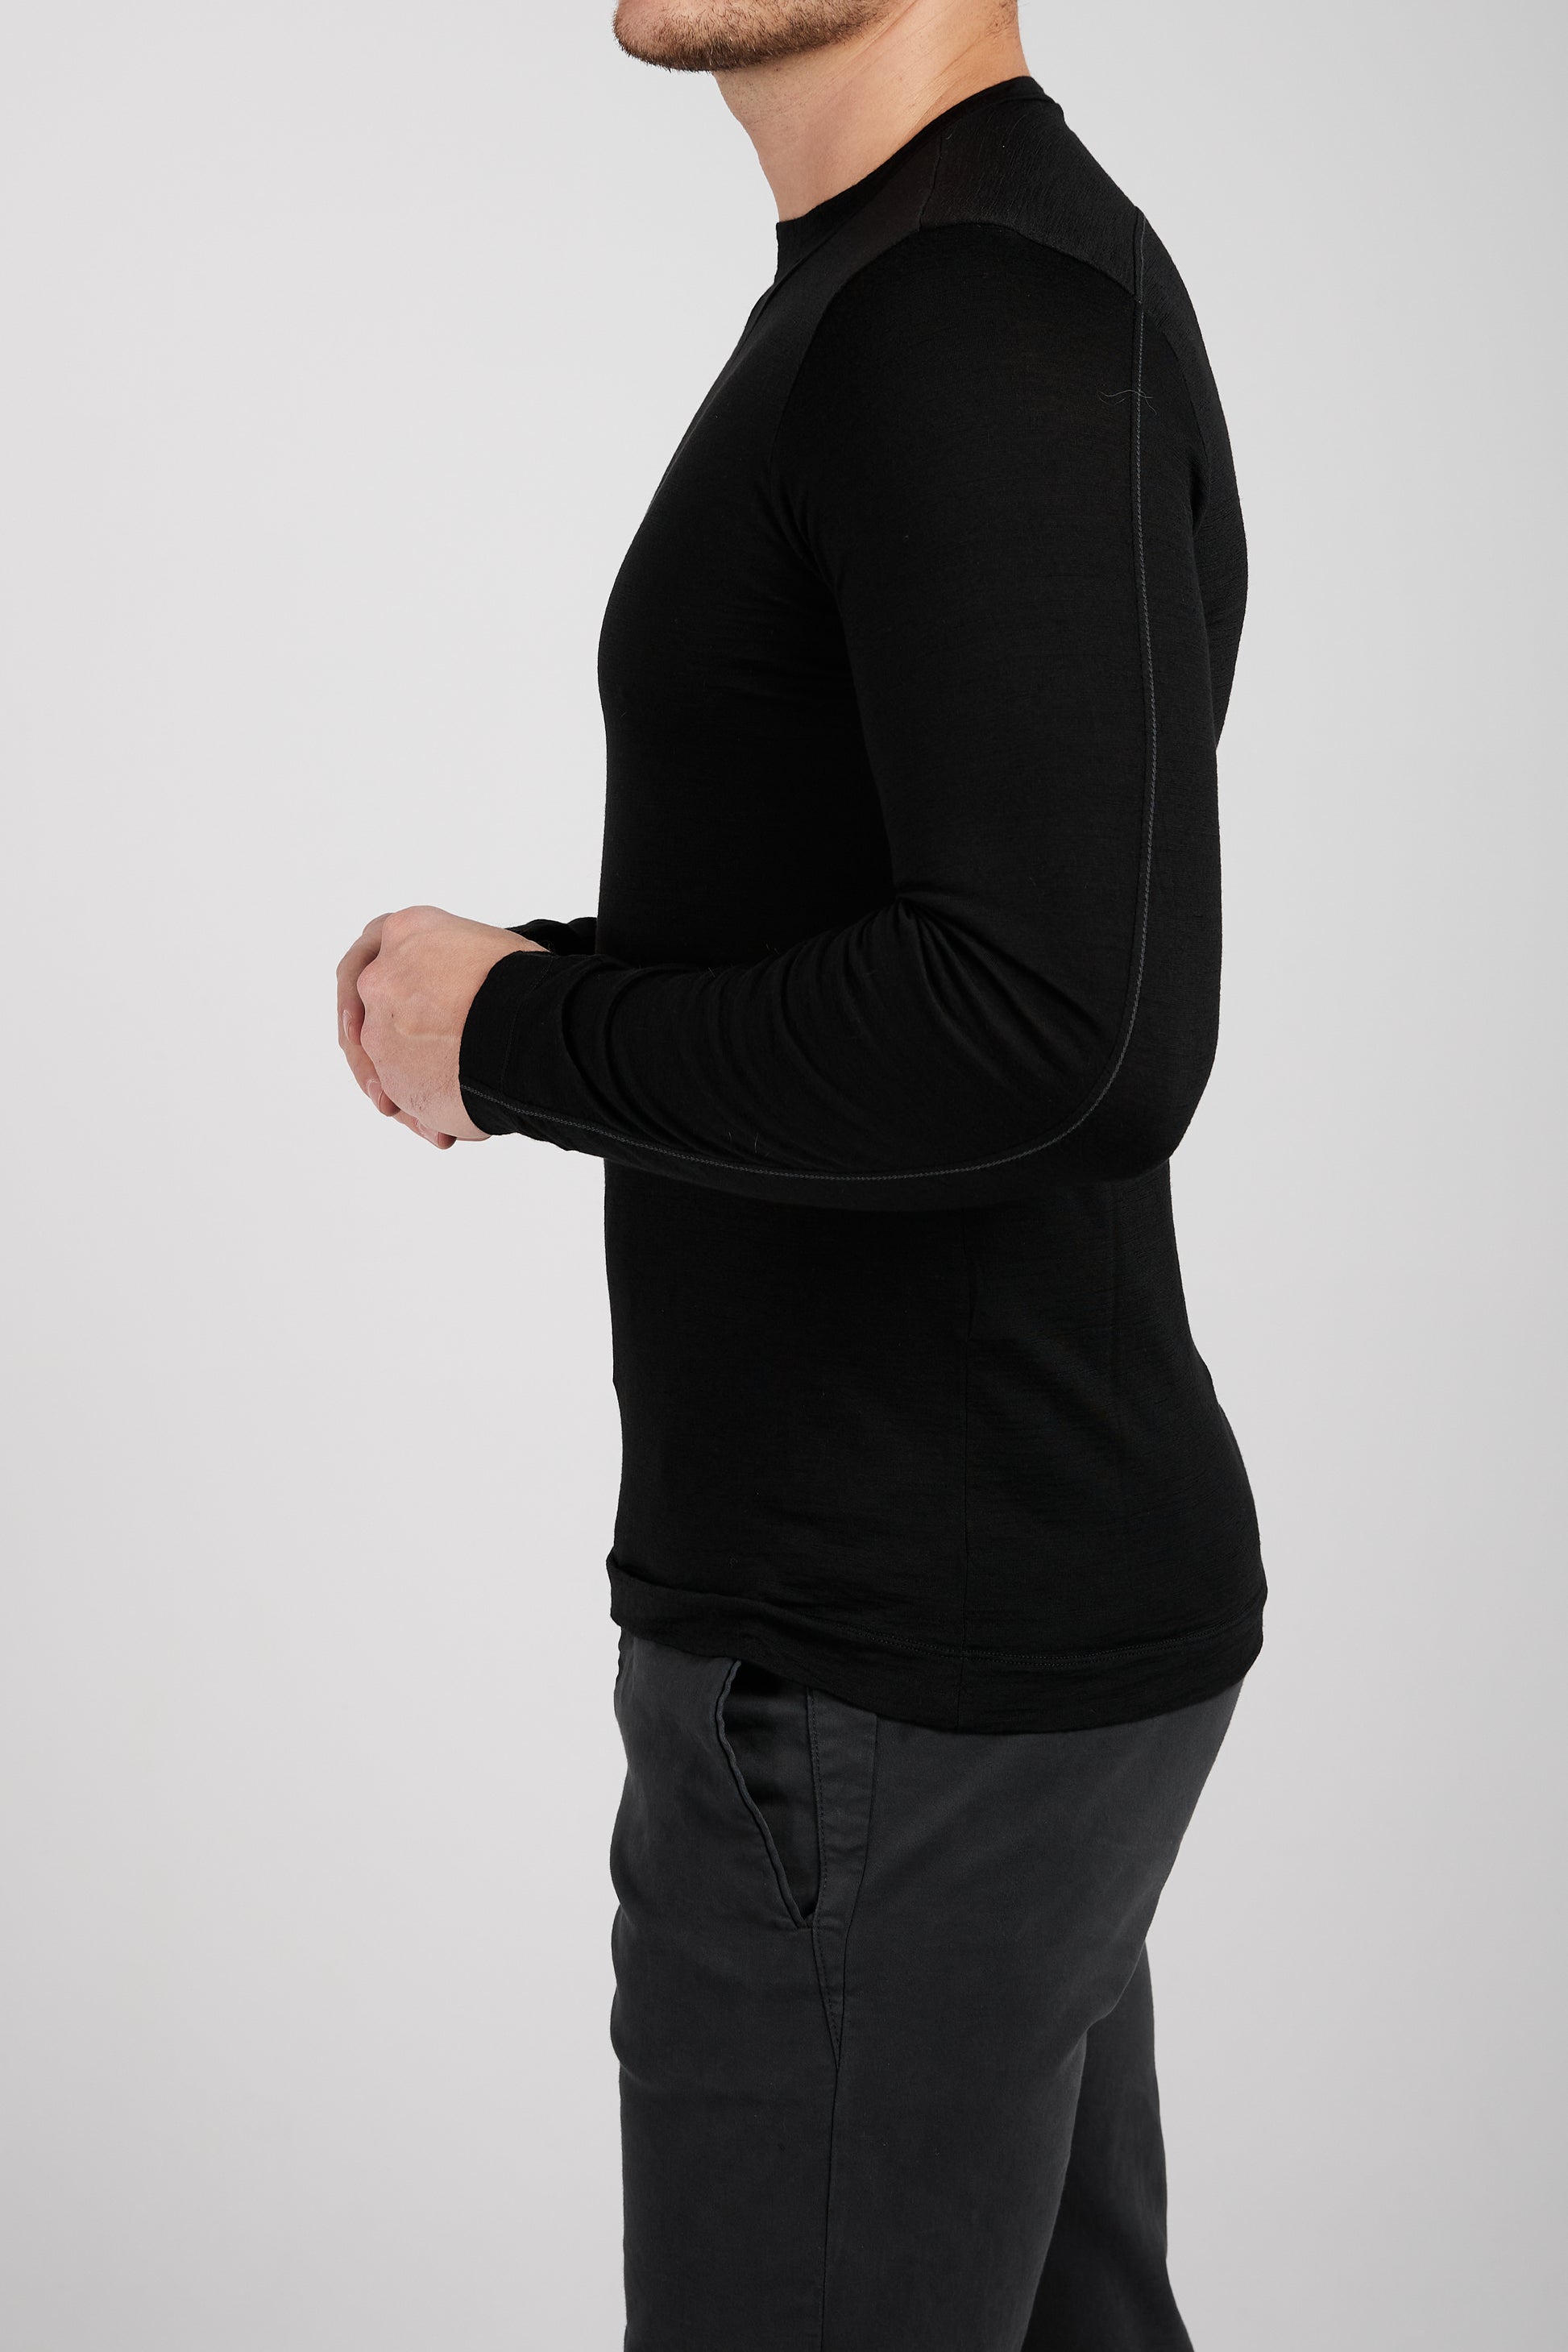 TRANSIT Long Sleeve Shirt in Black